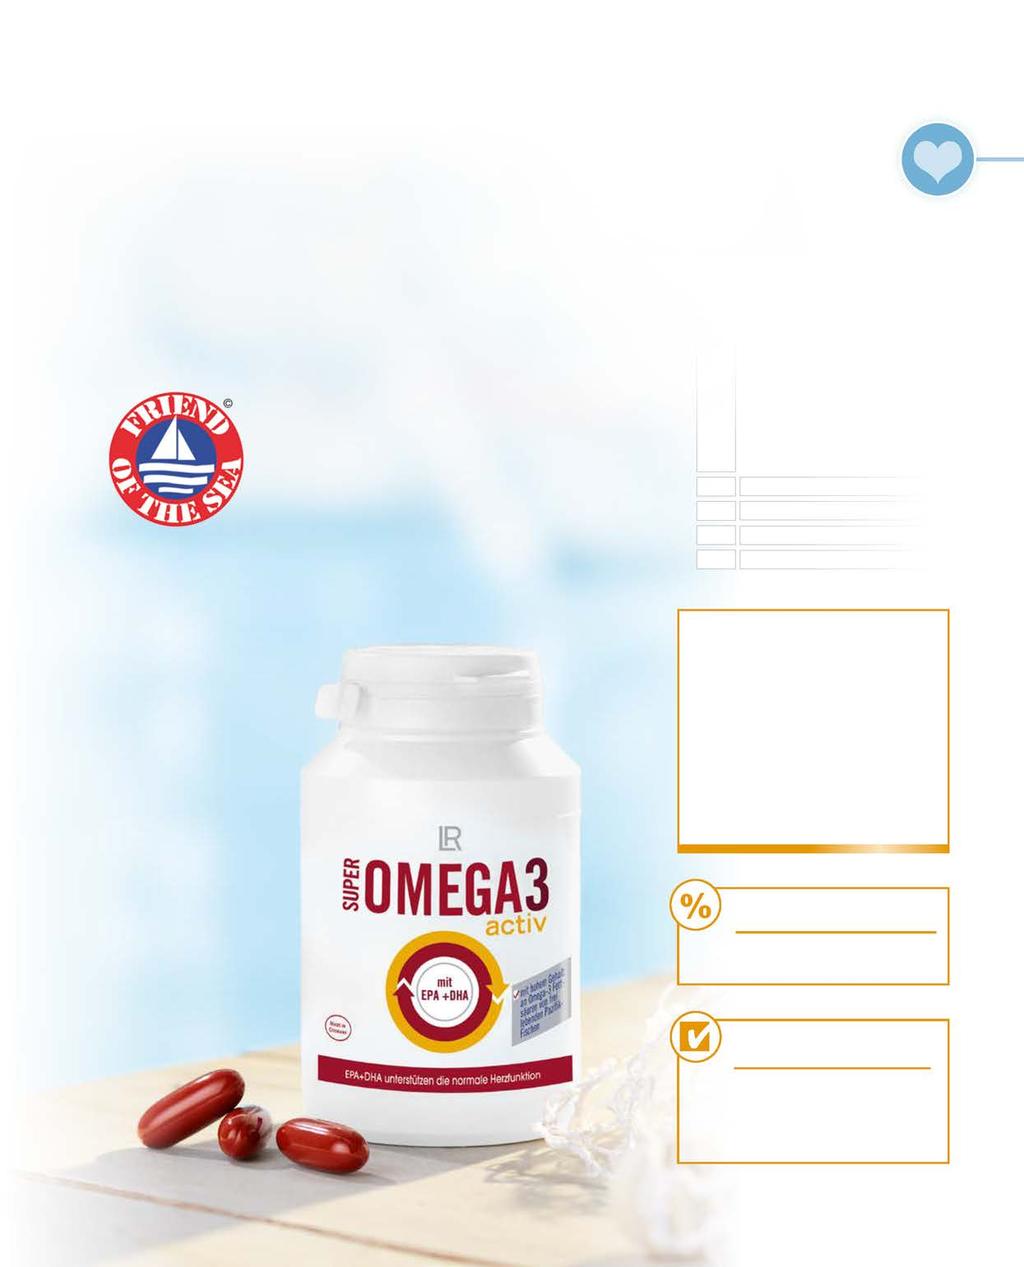 Omega 3 voor de gezondheid van het hart De Omega-3-vetzuren EPA (eicosapentaeenzuur) en DHA (docosahexaeenzuur) zijn belangrijk voor het gezond houden van de hartfunctie 1.